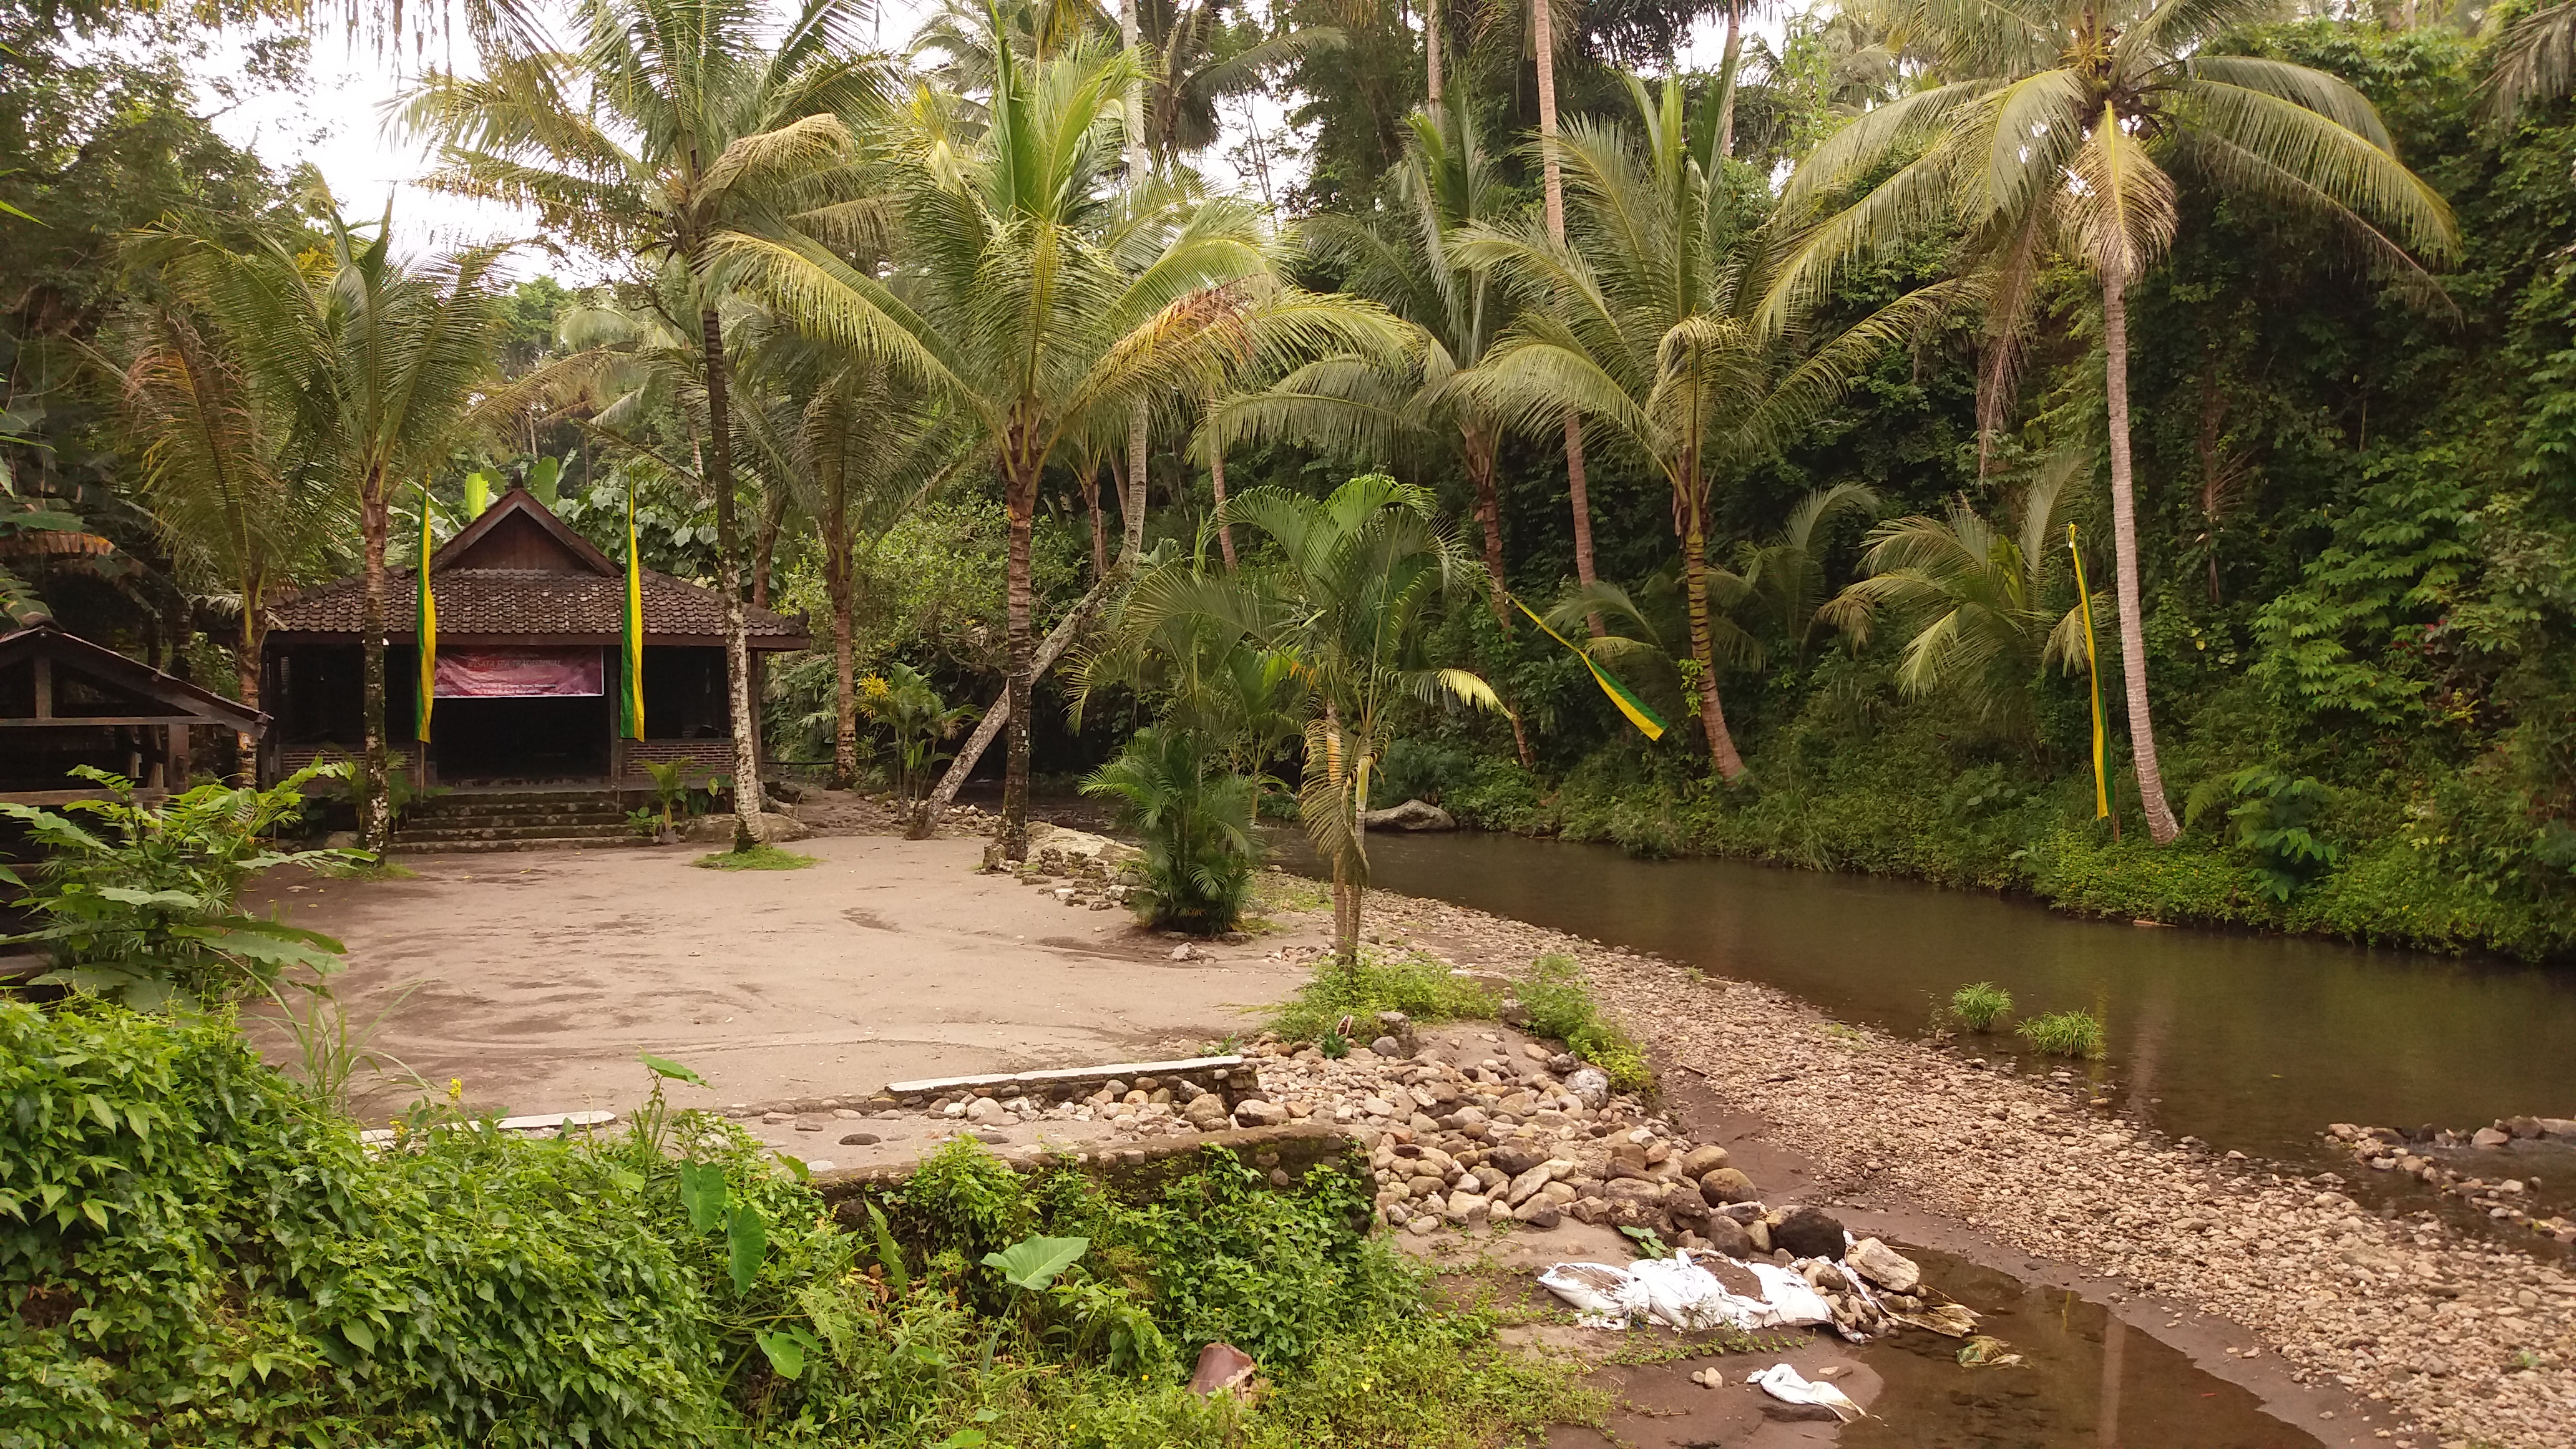 Desa Wisata Kembang Arum Yang nyaman untuk ber relaksasi